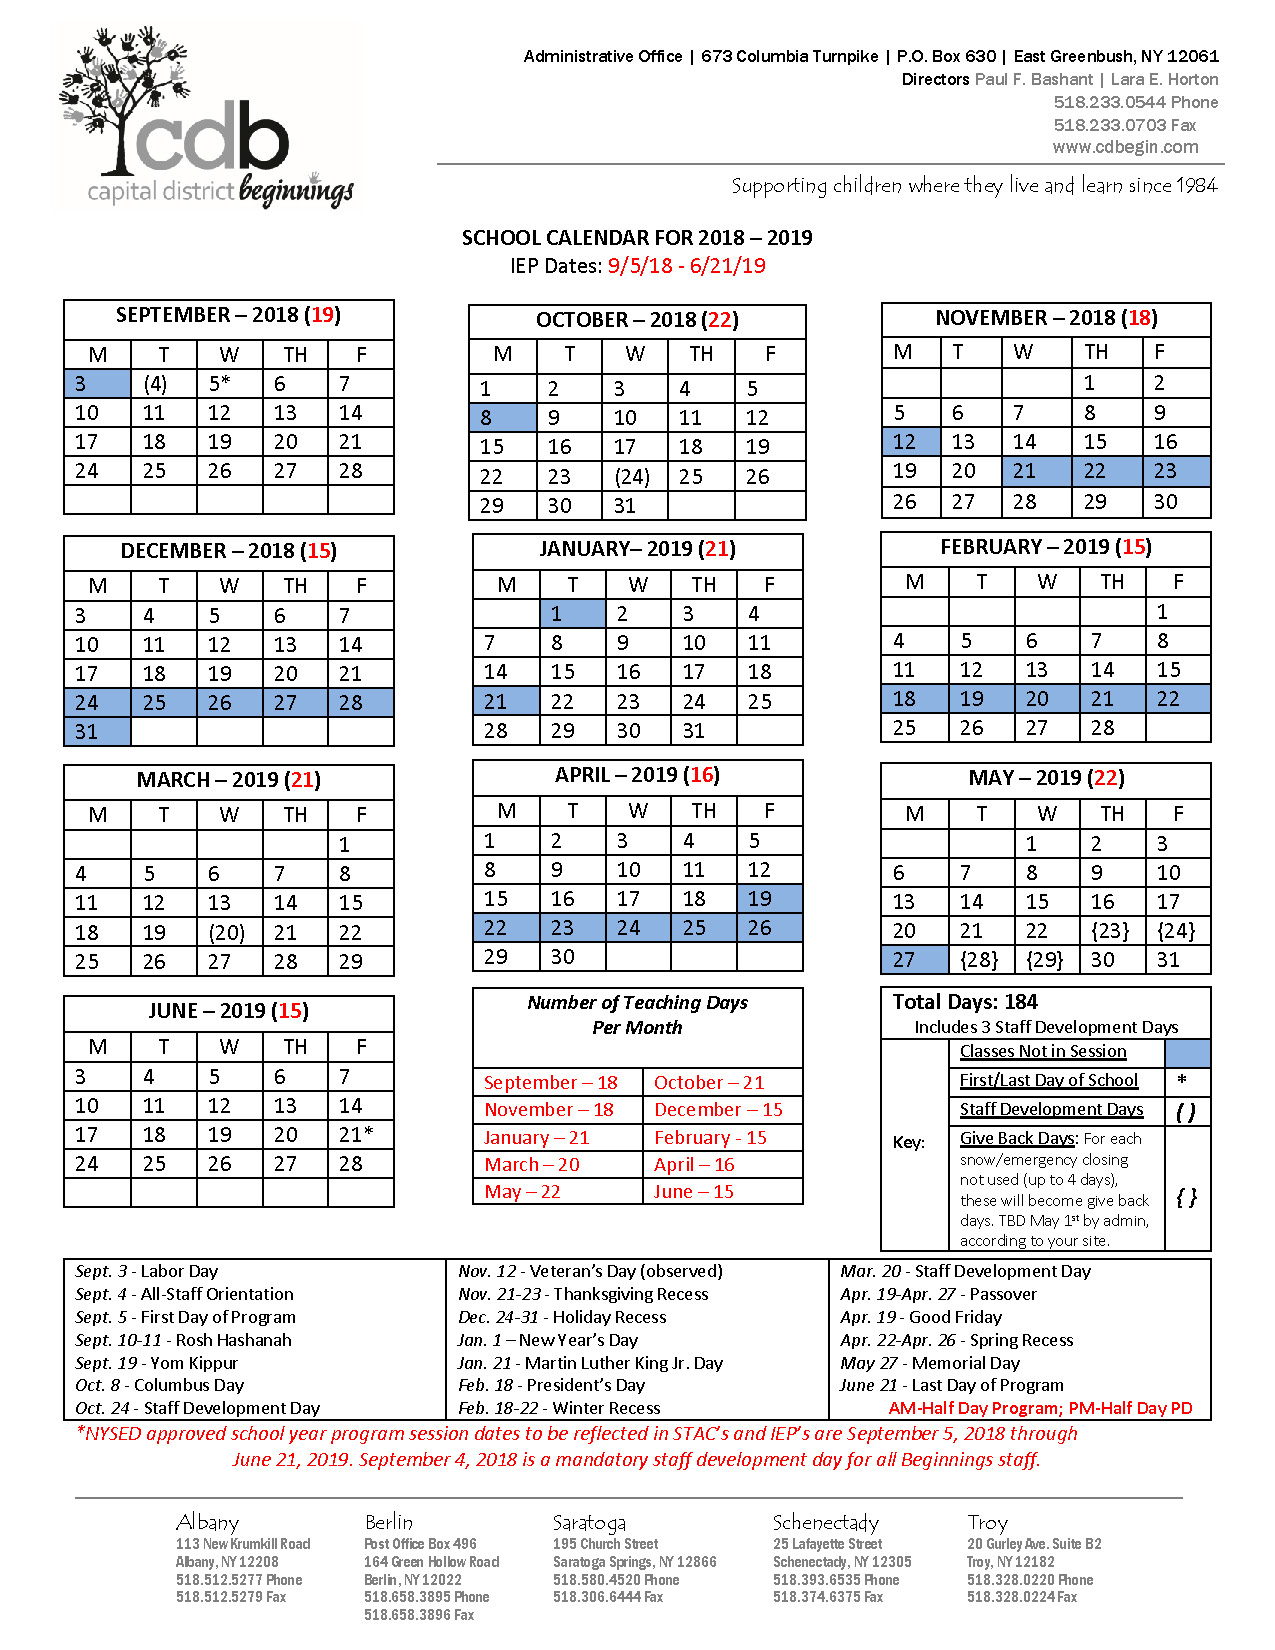 capital-district-beginnings-program-calendar